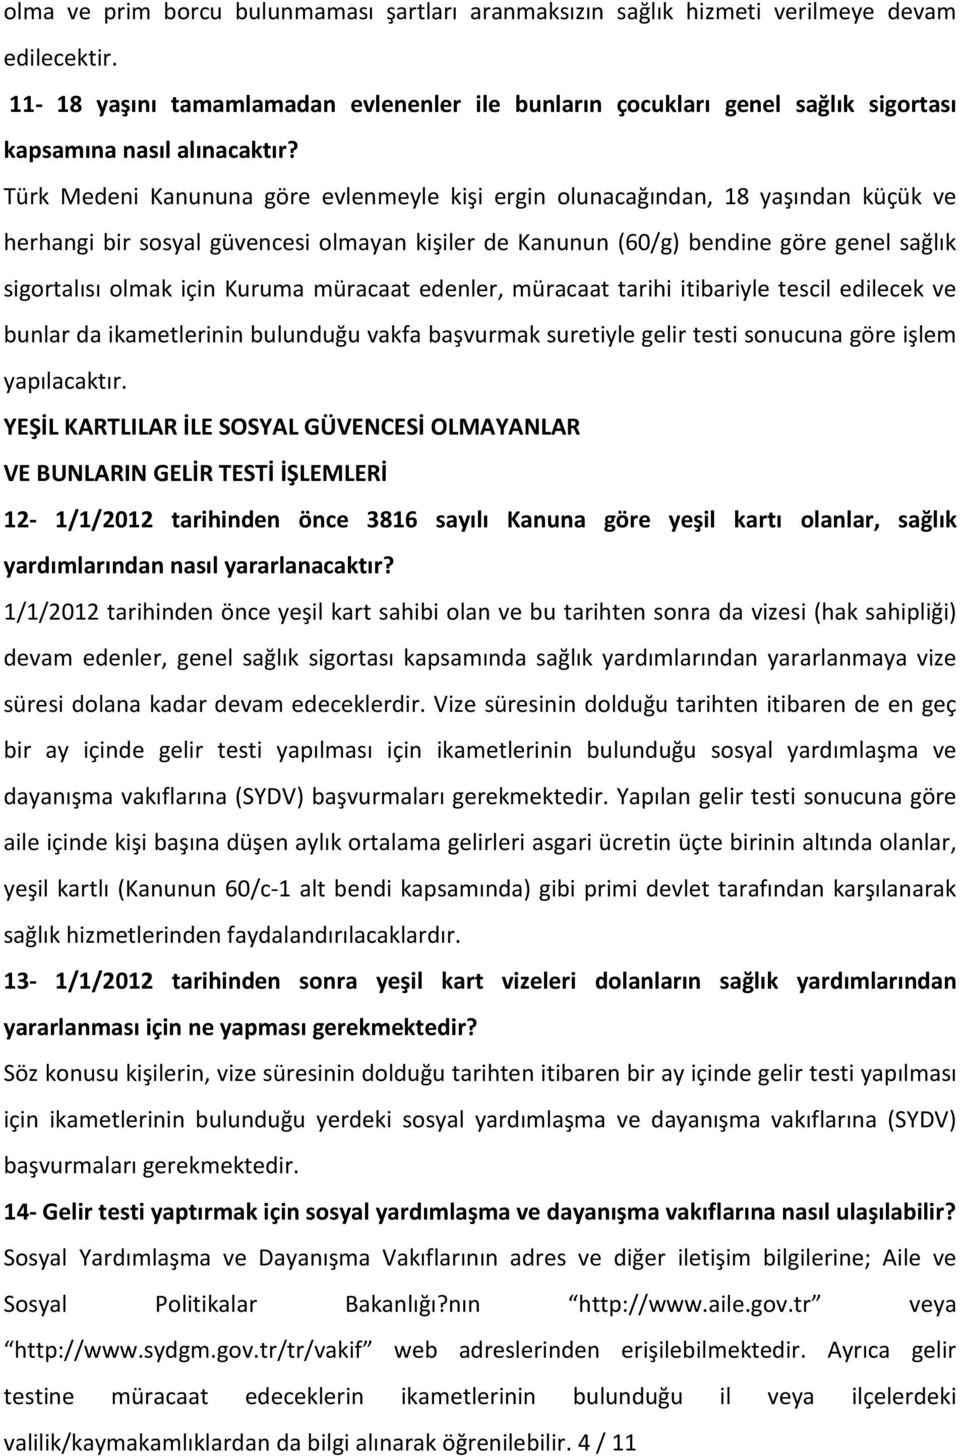 Türk Medeni Kanununa göre evlenmeyle kişi ergin olunacağından, 18 yaşından küçük ve herhangi bir sosyal güvencesi olmayan kişiler de Kanunun (60/g) bendine göre genel sağlık sigortalısı olmak için